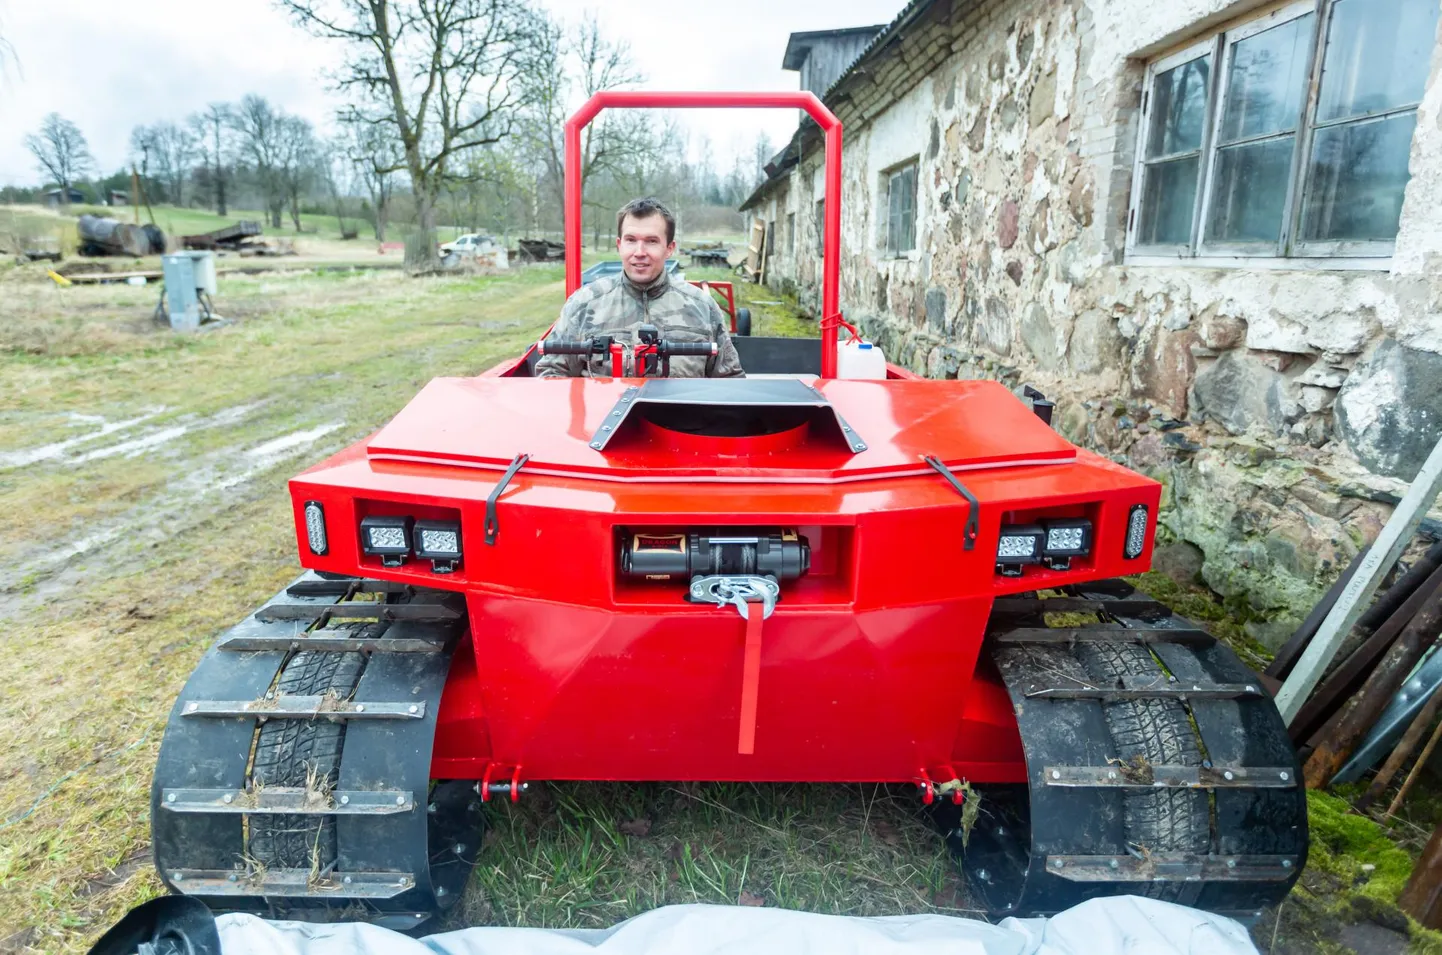 Самая заметная машина Дональда - ярко-красная афмибия, которую он собирается использовать на болотах.